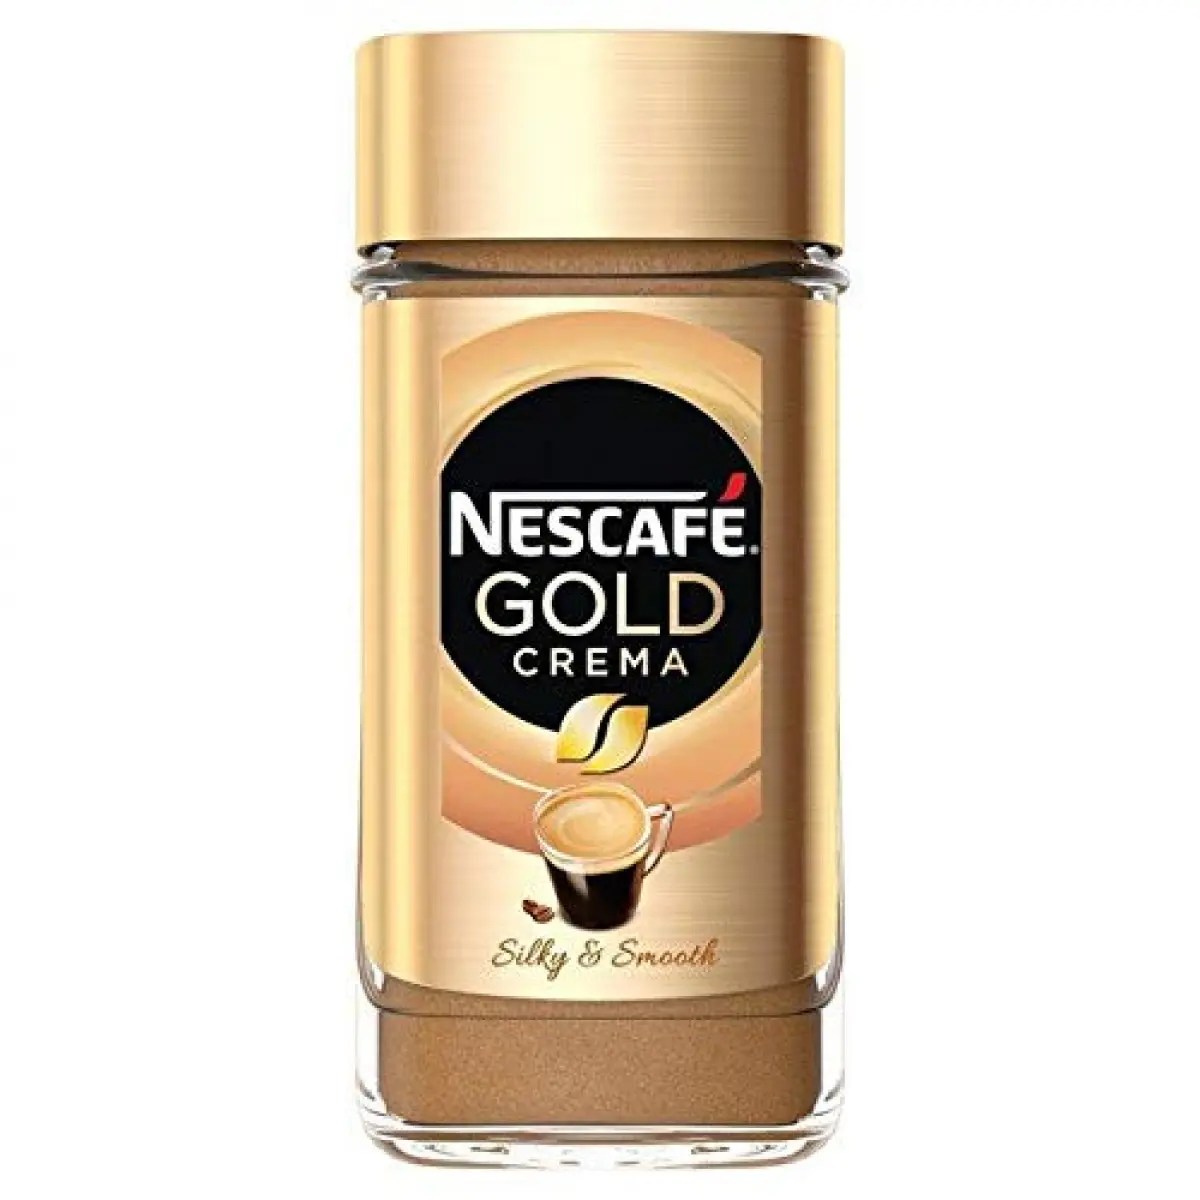 Cafea solubila Nescafe Gold Crema Silky & Smooth 95 g